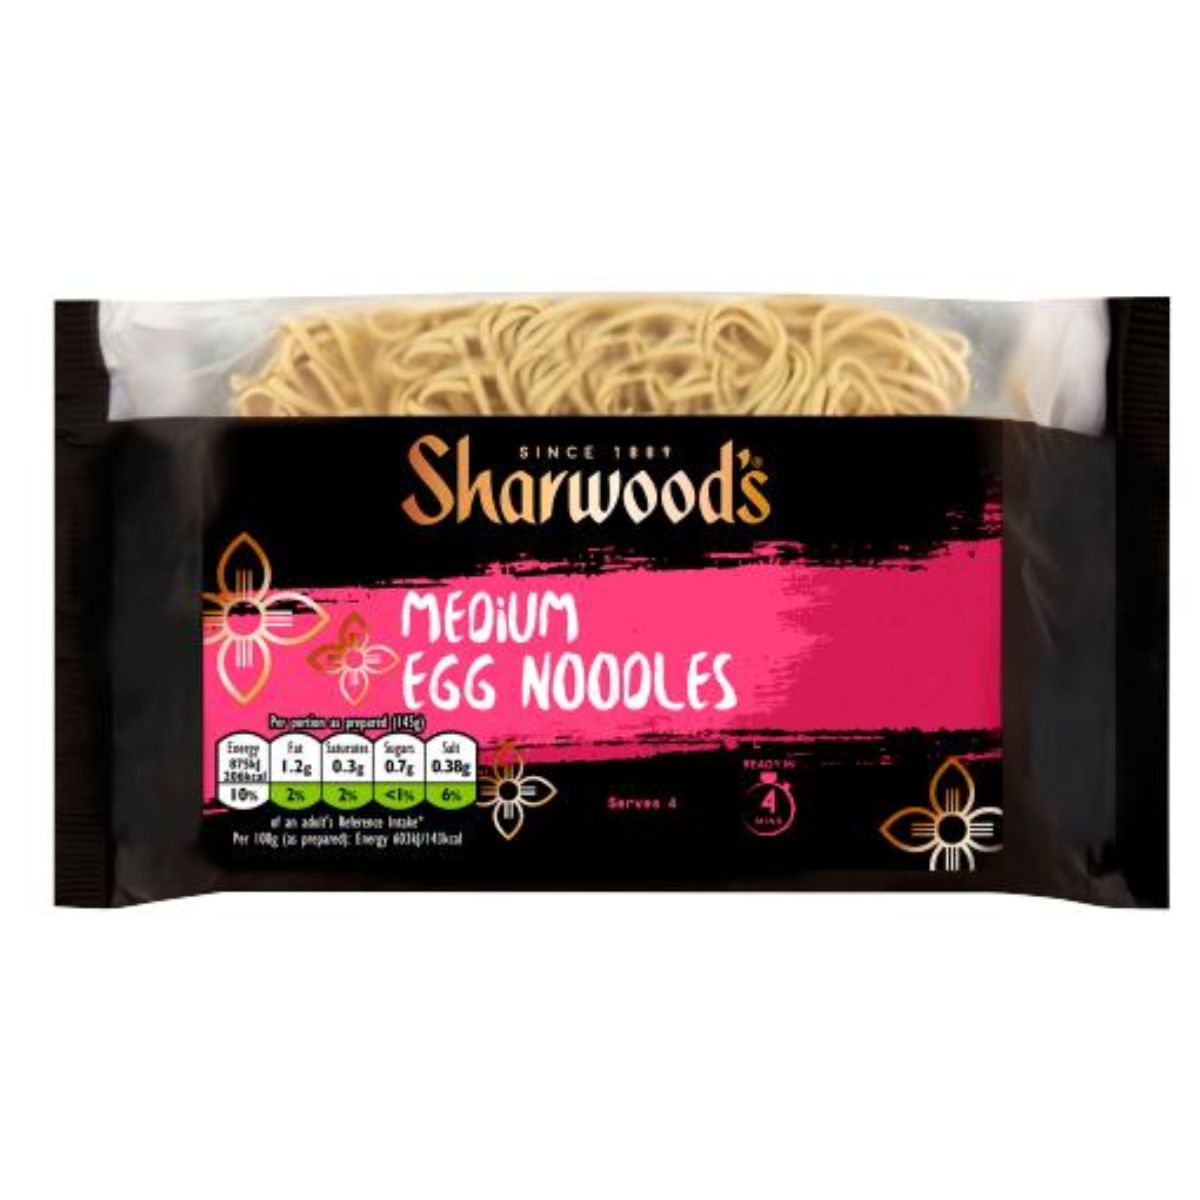 A package of Sharwoods - Medium Egg Noodles - 226g.